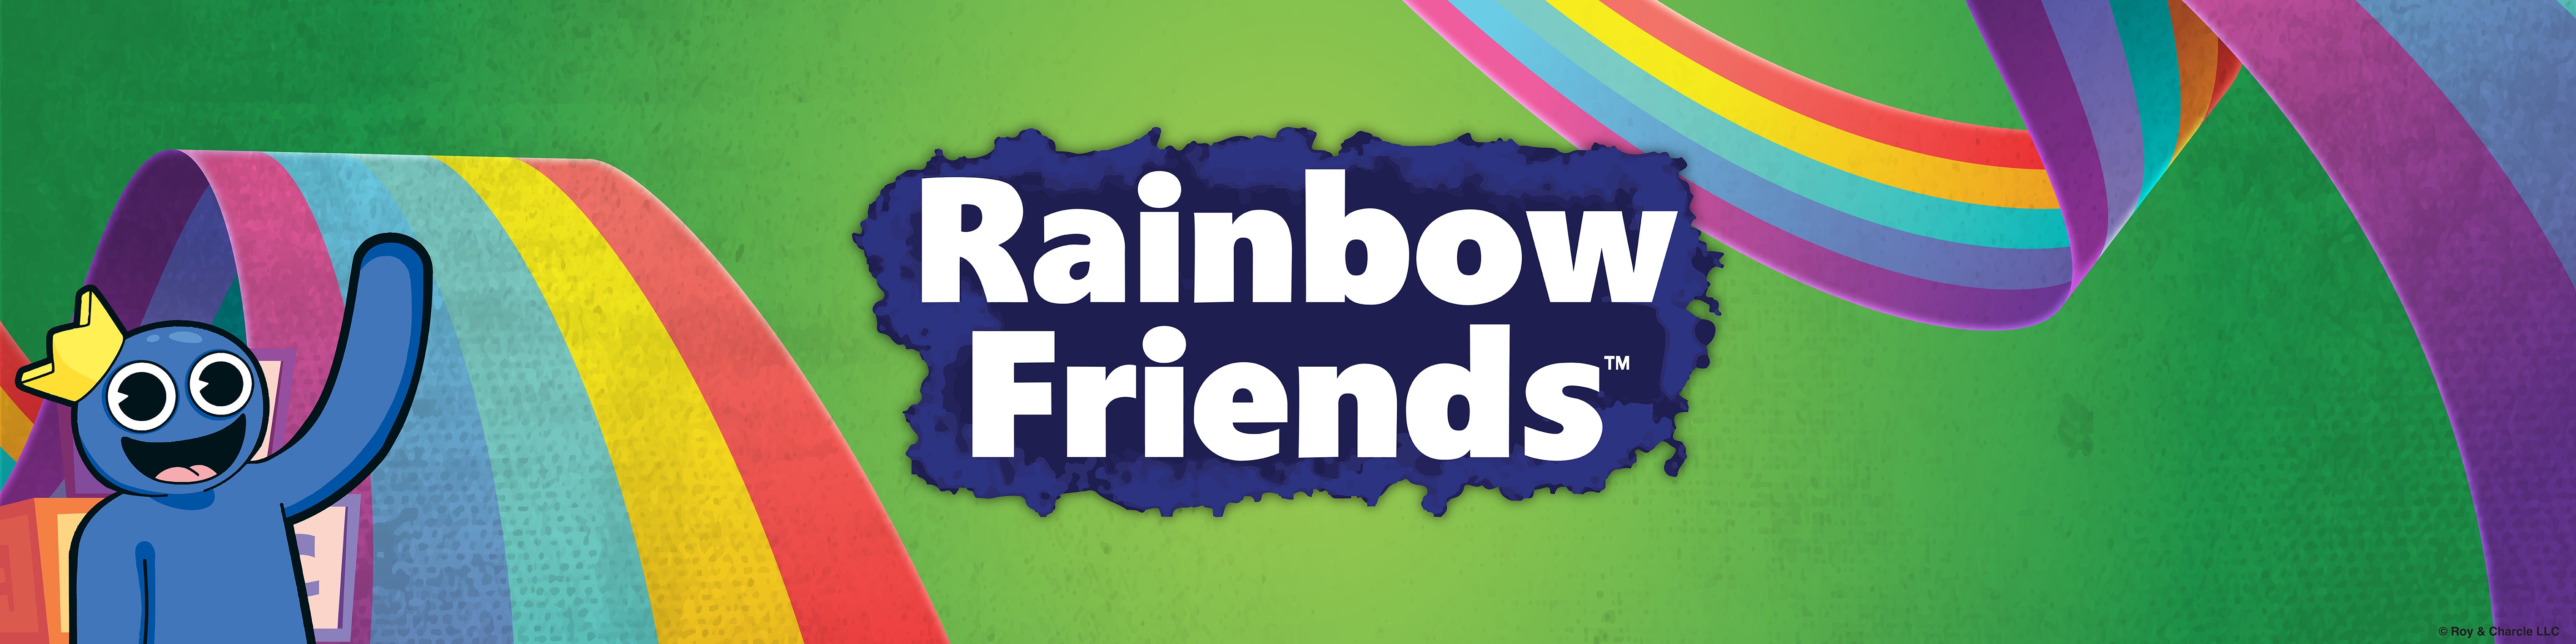  UCC Distributing Rainbow Friends Green Friend, 8